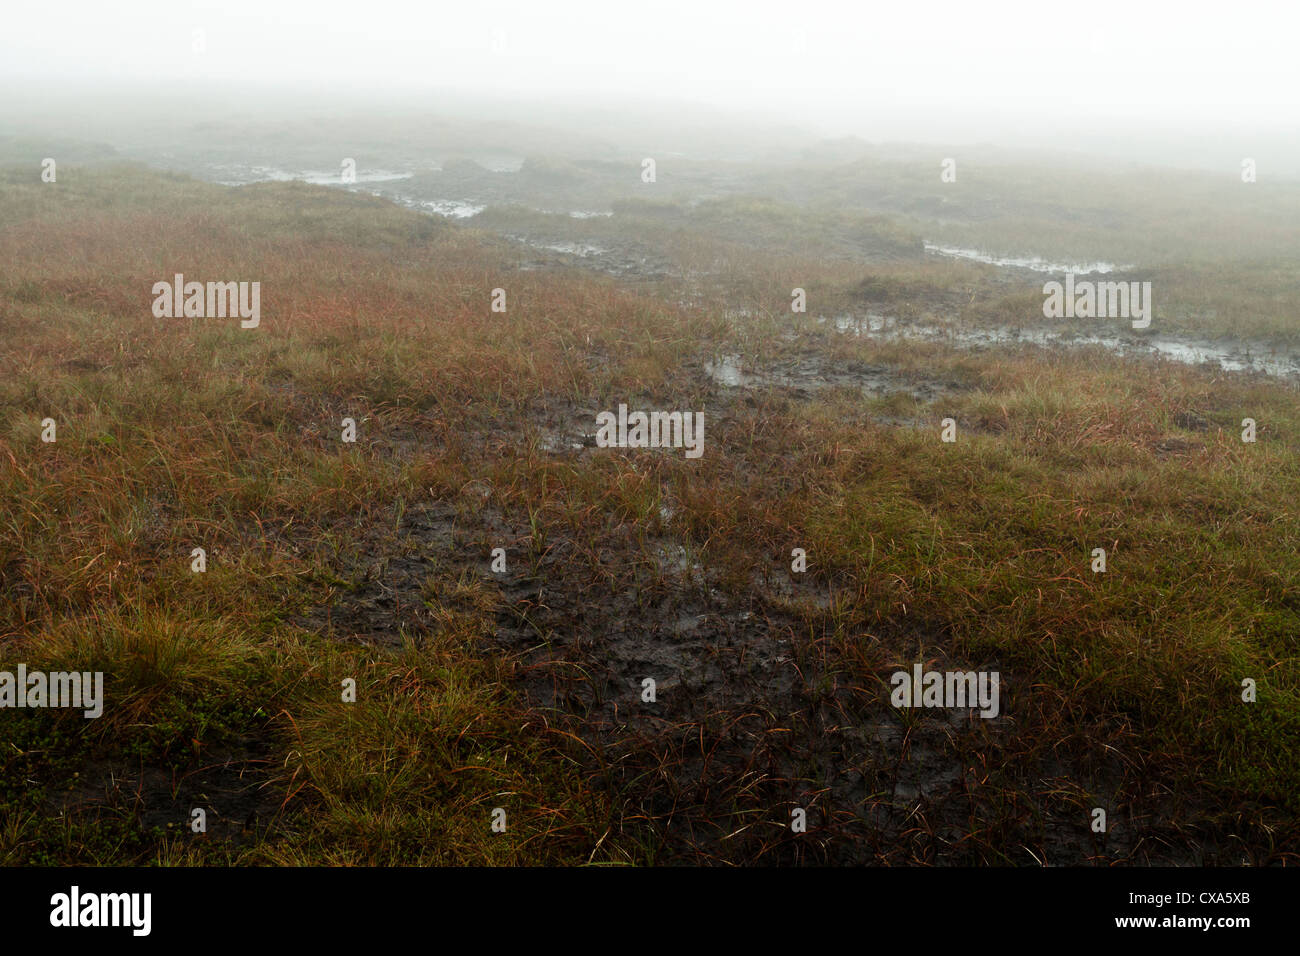 Sombre paysage de landes brumeuses. Plus de brouillard dense tourbière landes humides autour de Brown, Knoll, Derbyshire Peak District National Park, Angleterre, RU Banque D'Images